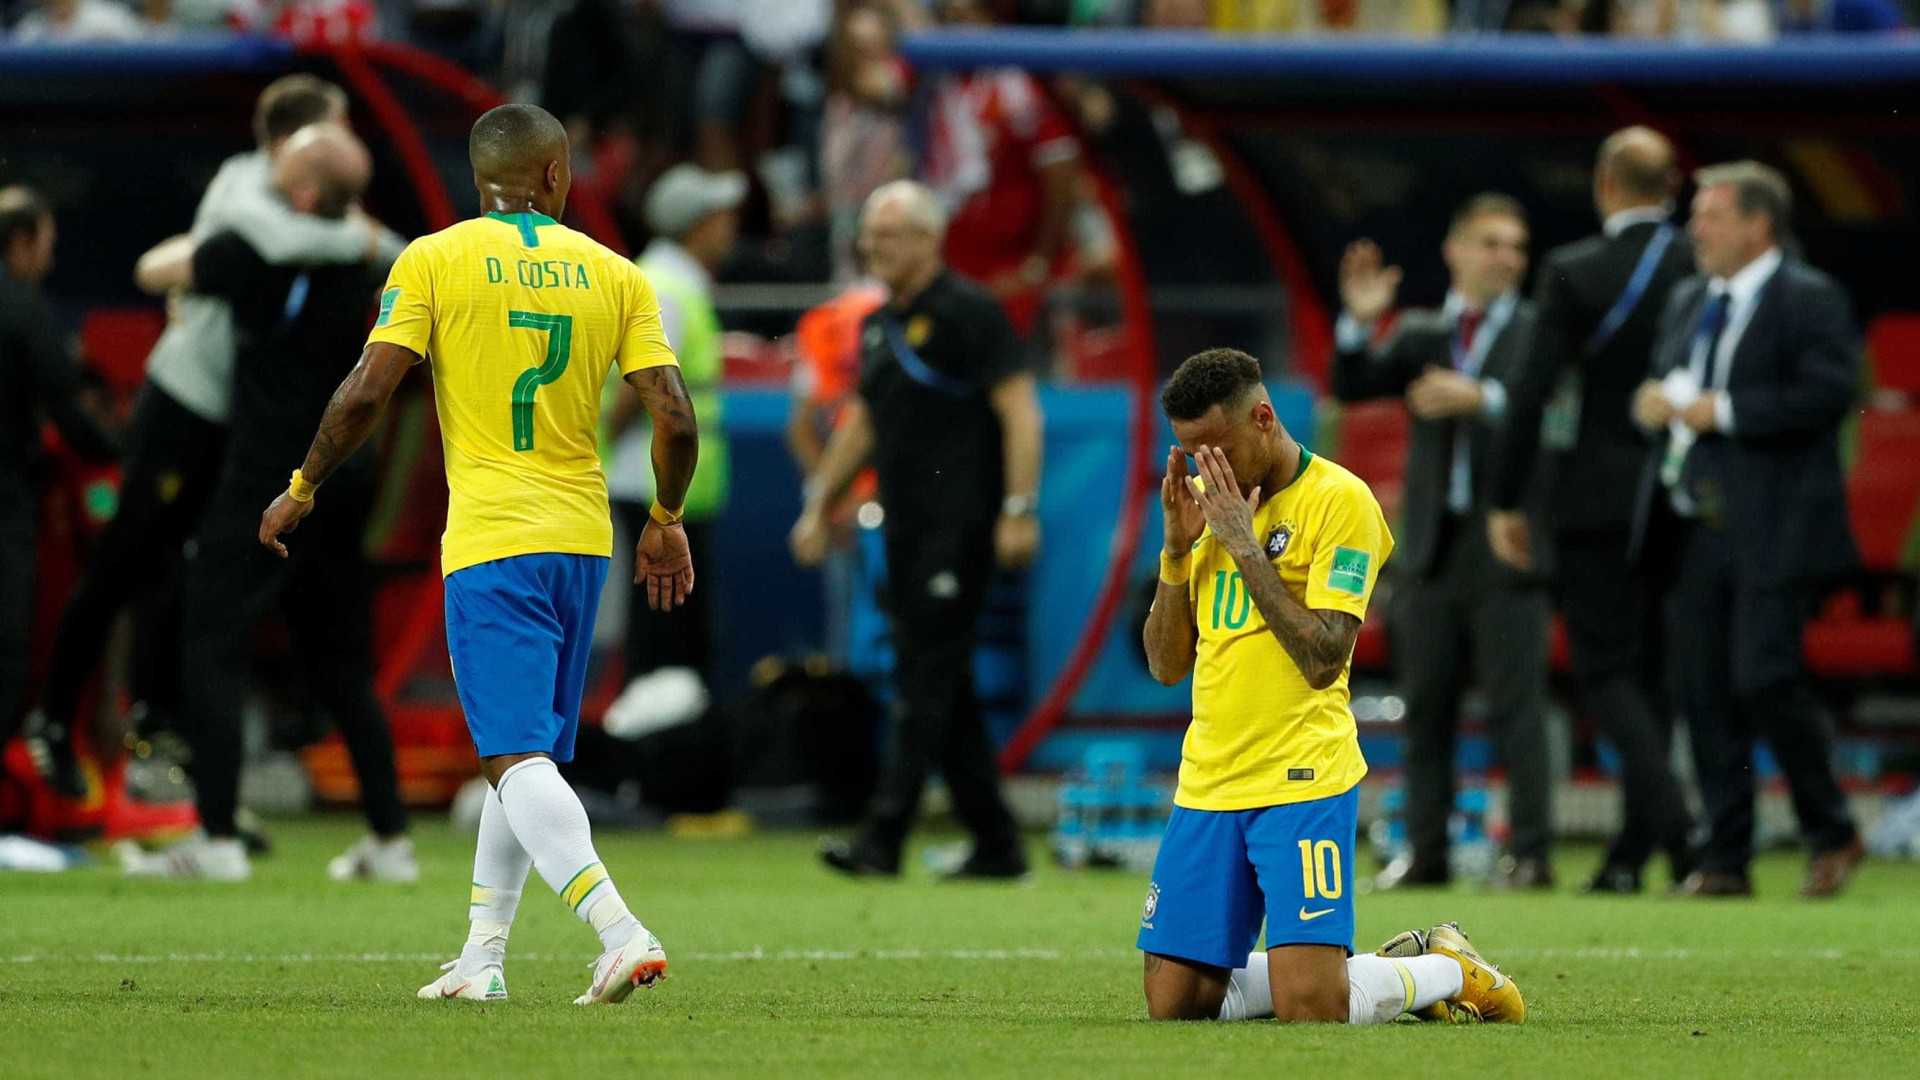 SeleÃ§Ã£o brasileira fica a um Mundial de igualar maior jejum em Copas